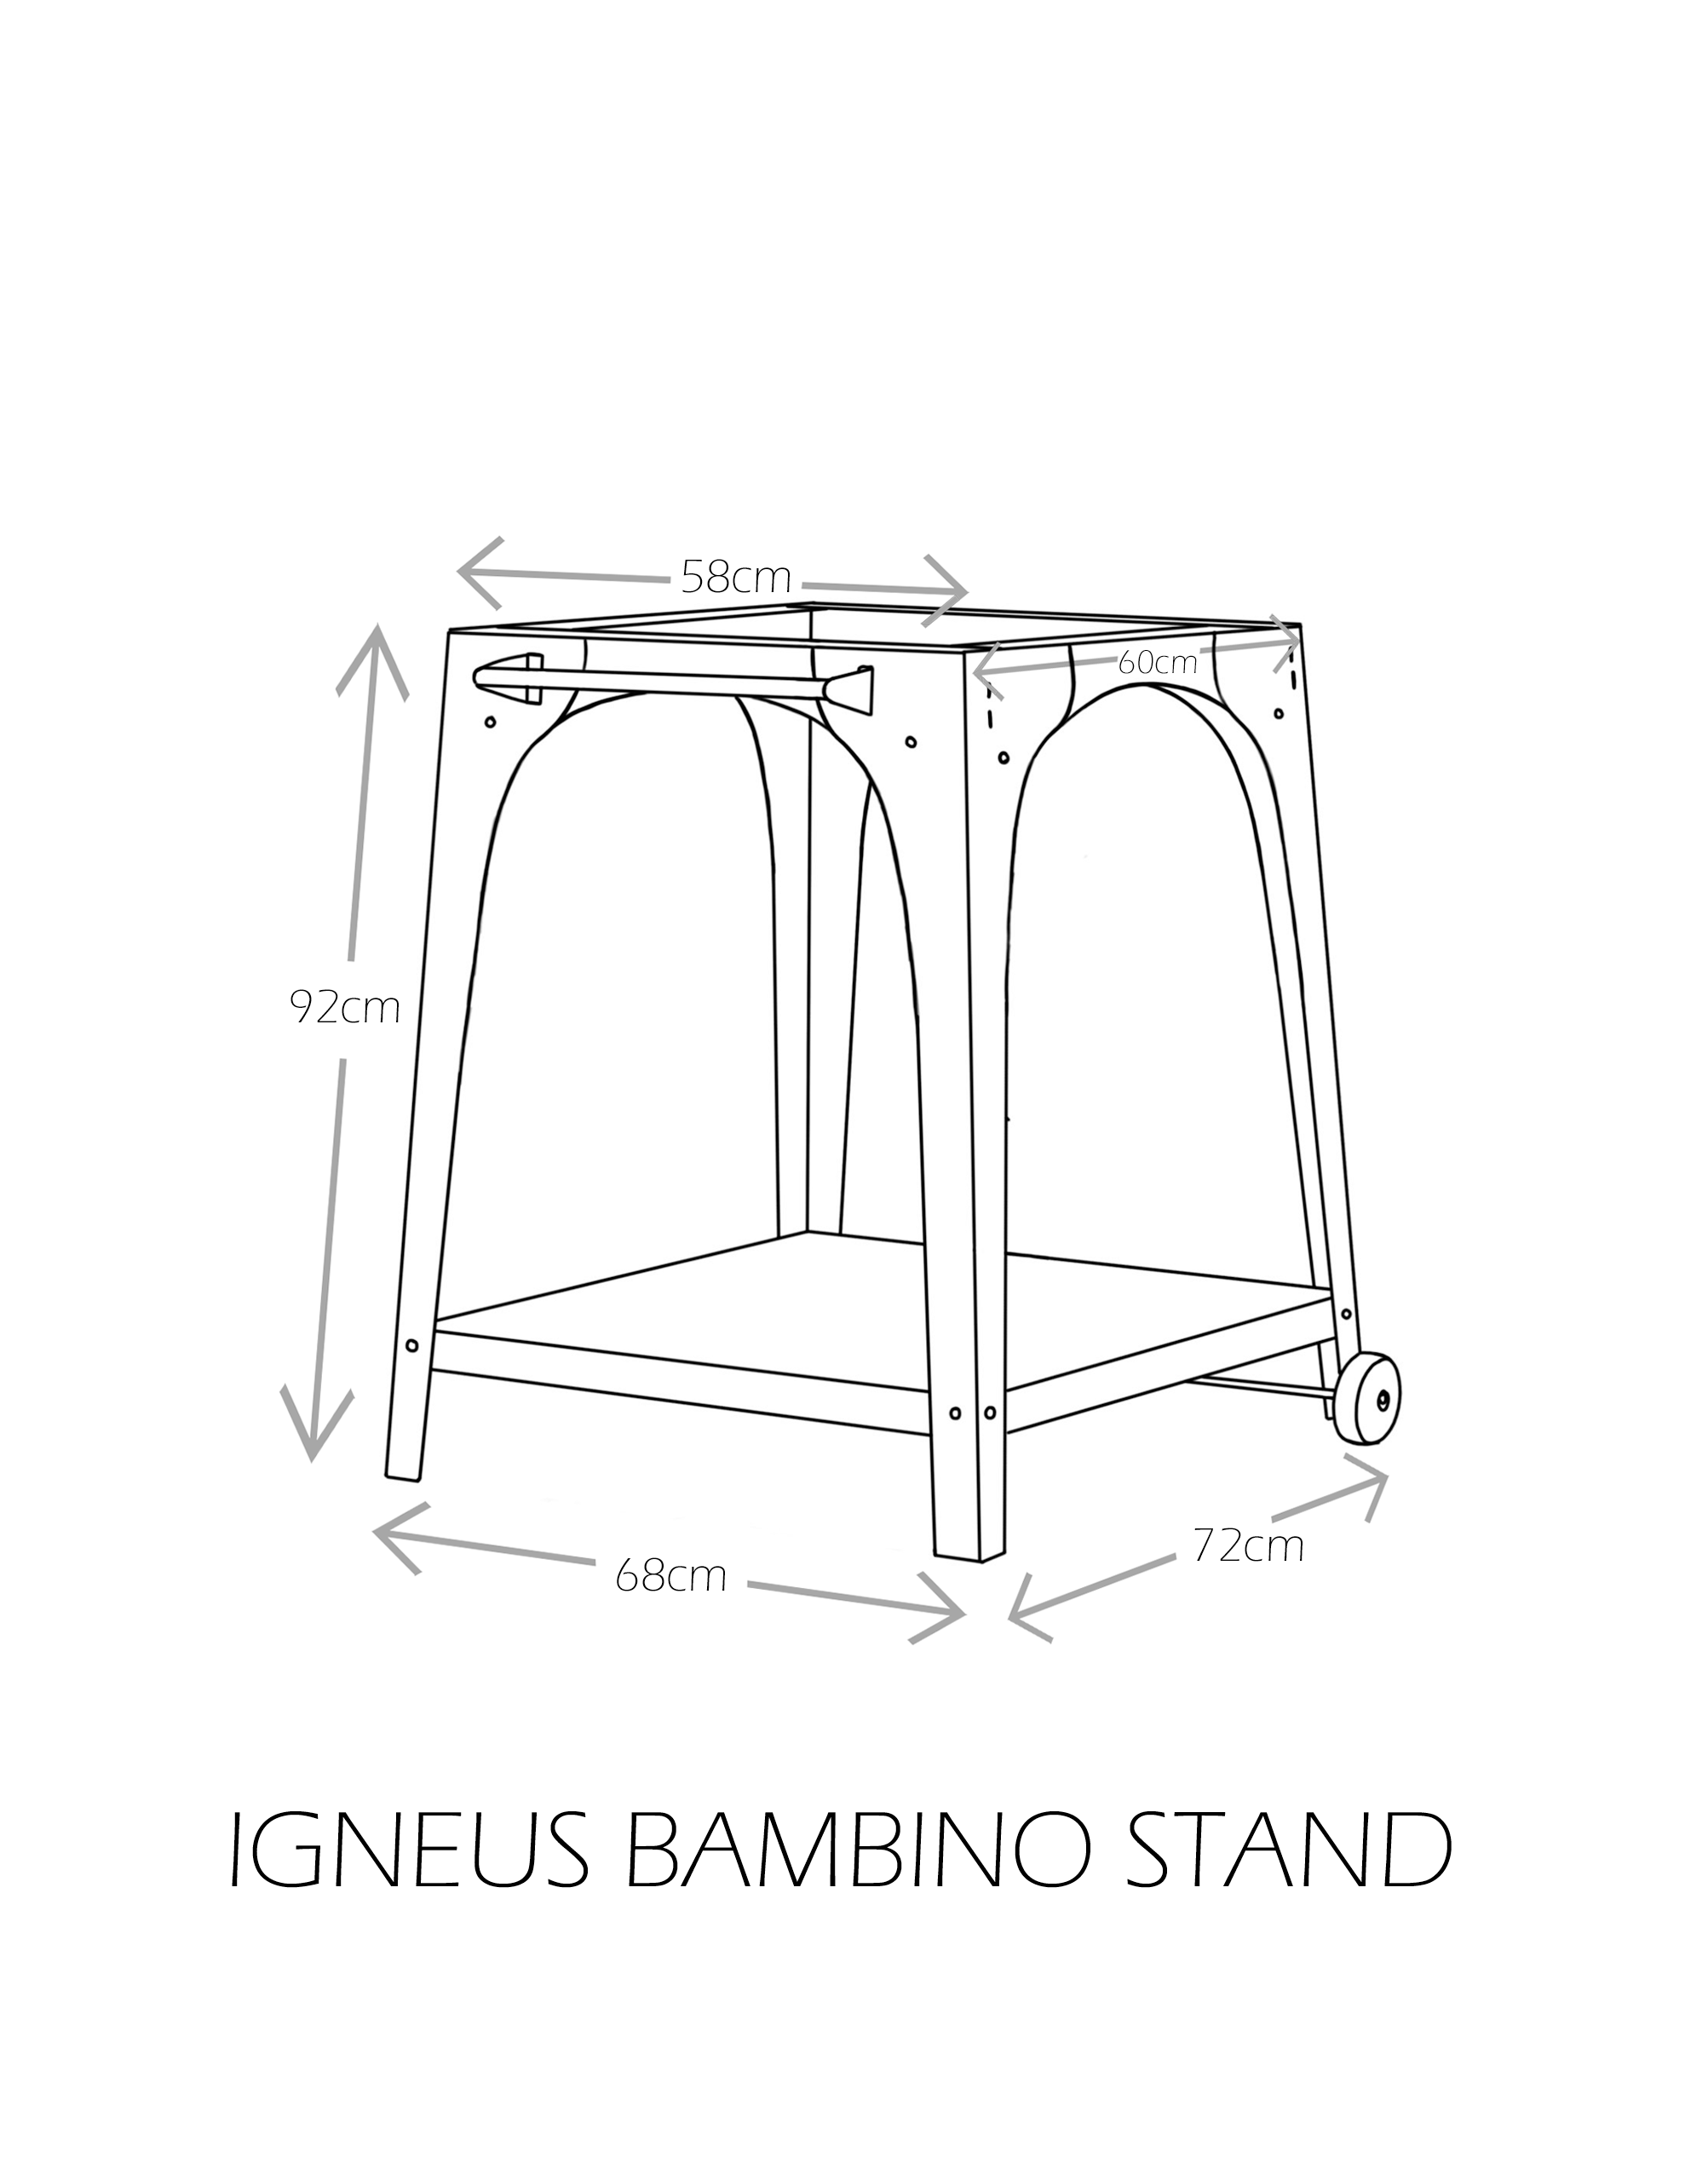 Igneus Bambino stand - dimensions